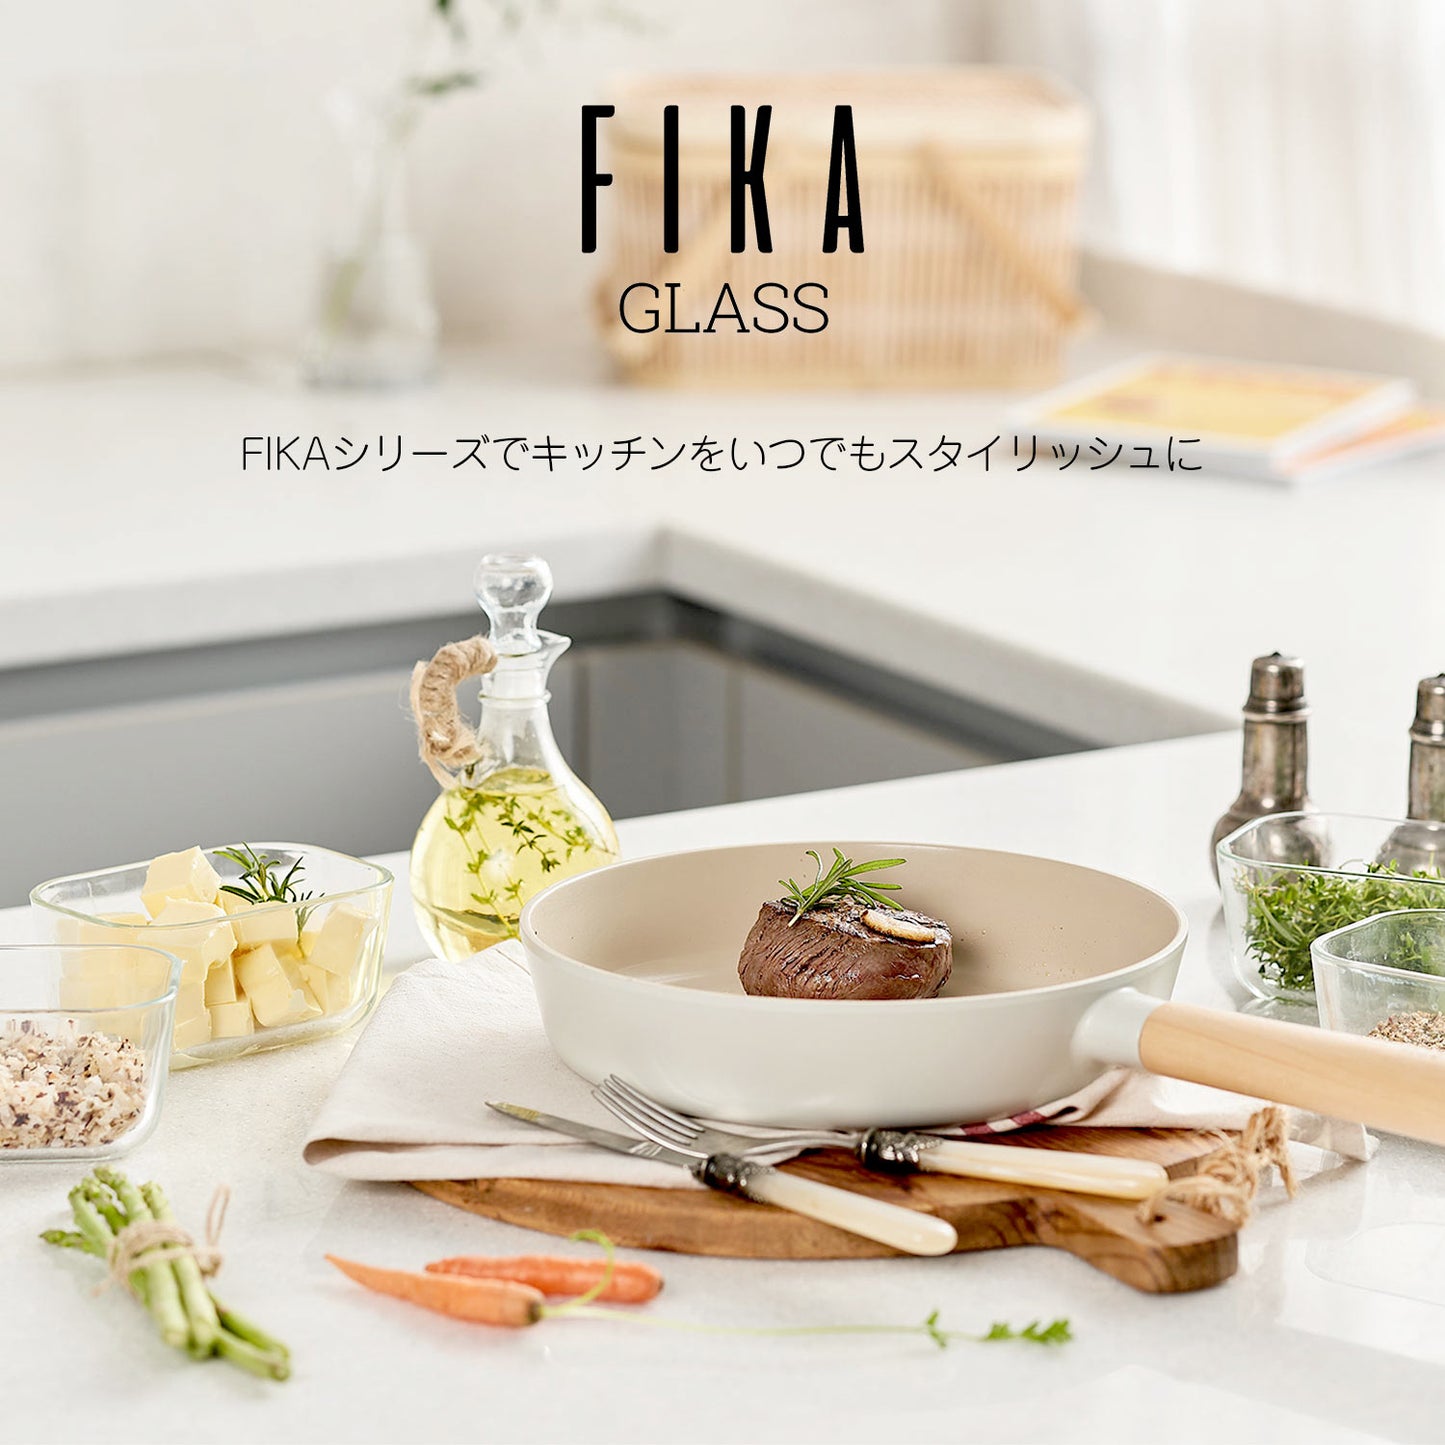 FIKAGLASS耐熱ガラス食品保存用容器 四角4点セット